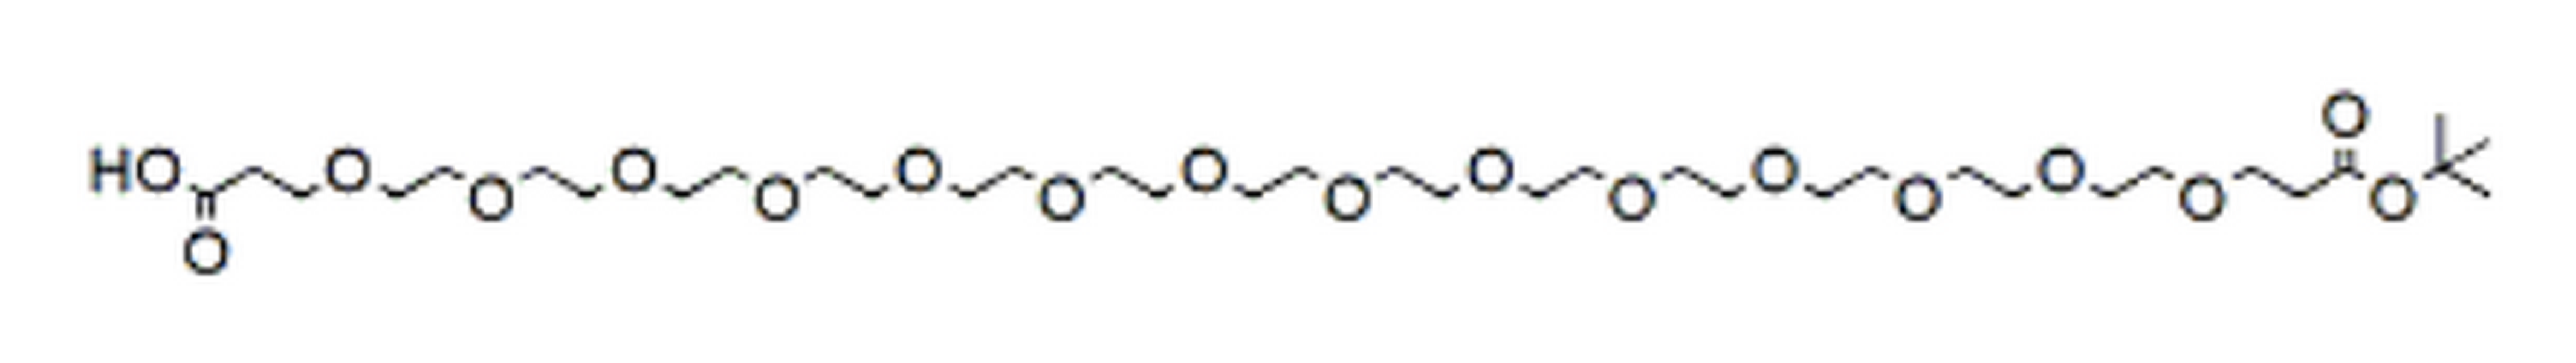 Acid-PEG14-t-butyl ester